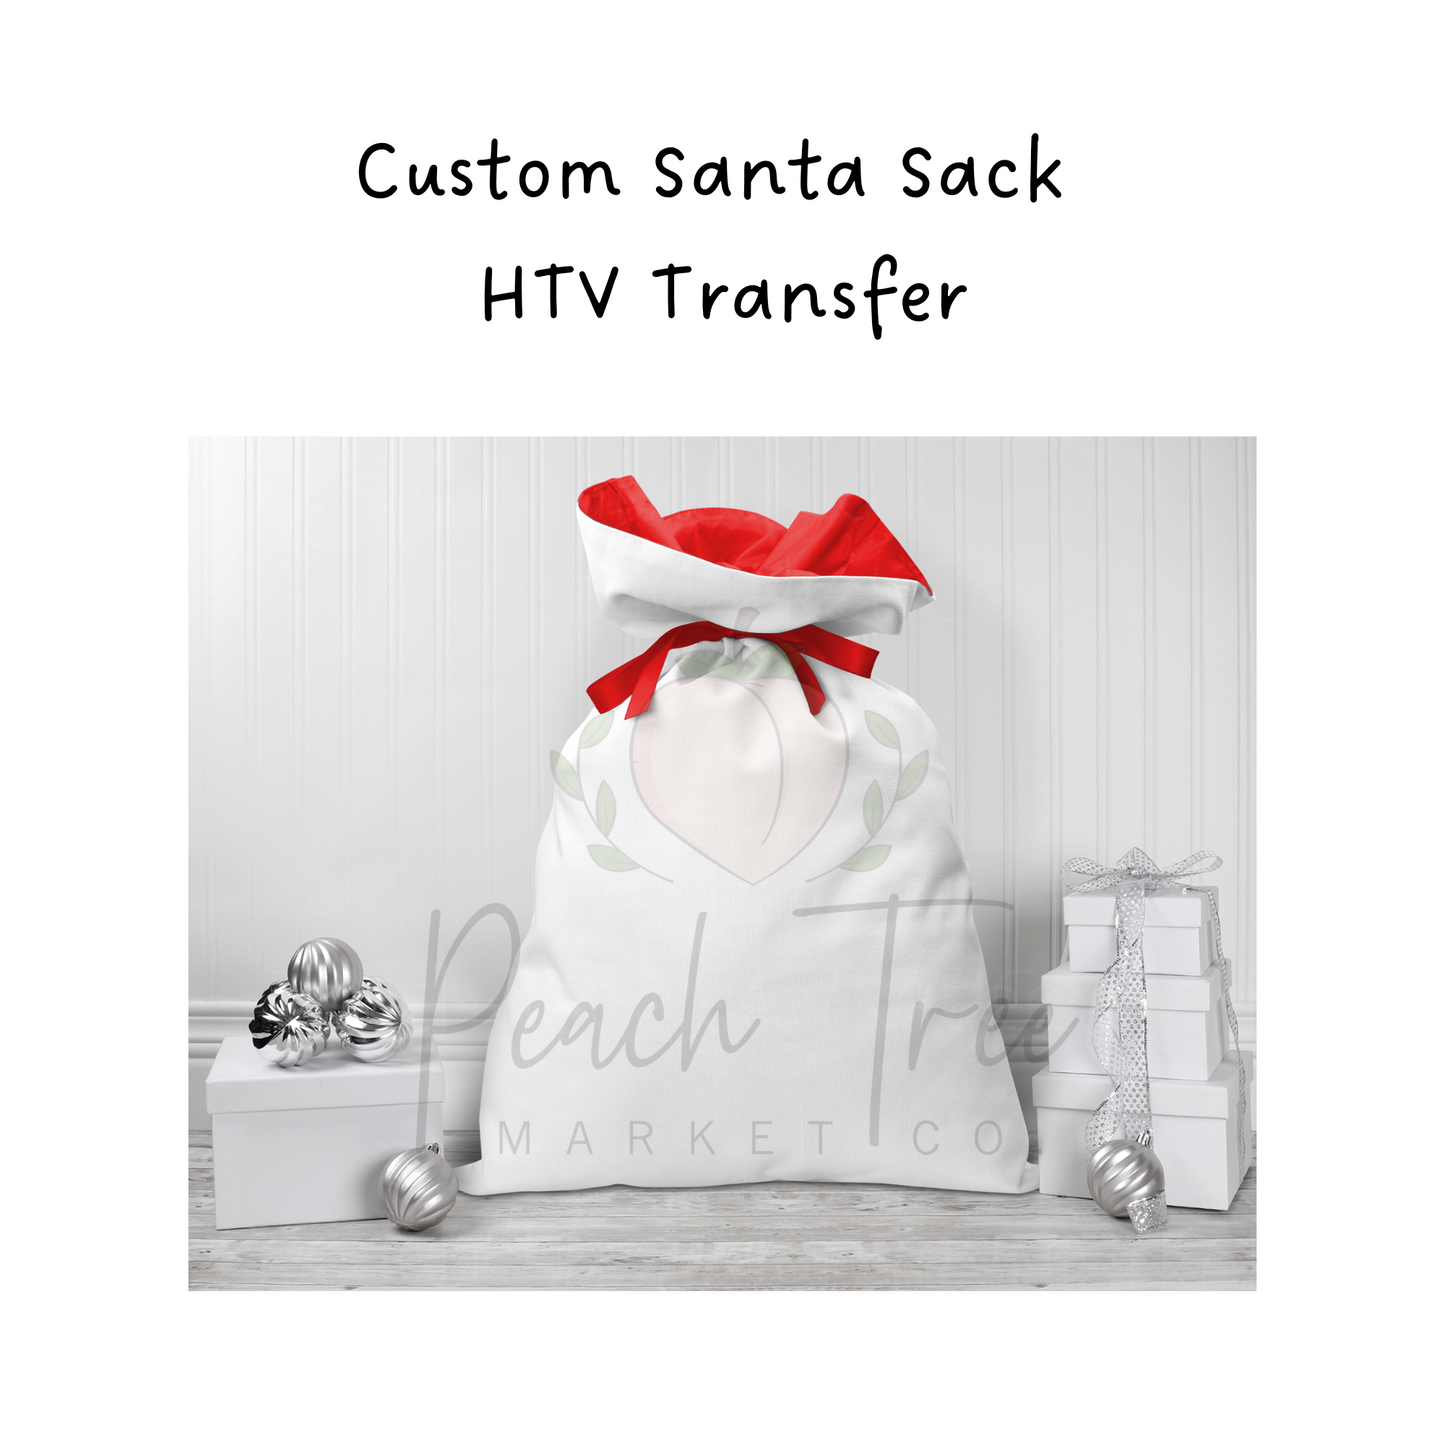 Custom Santa Sack HTV Transfer